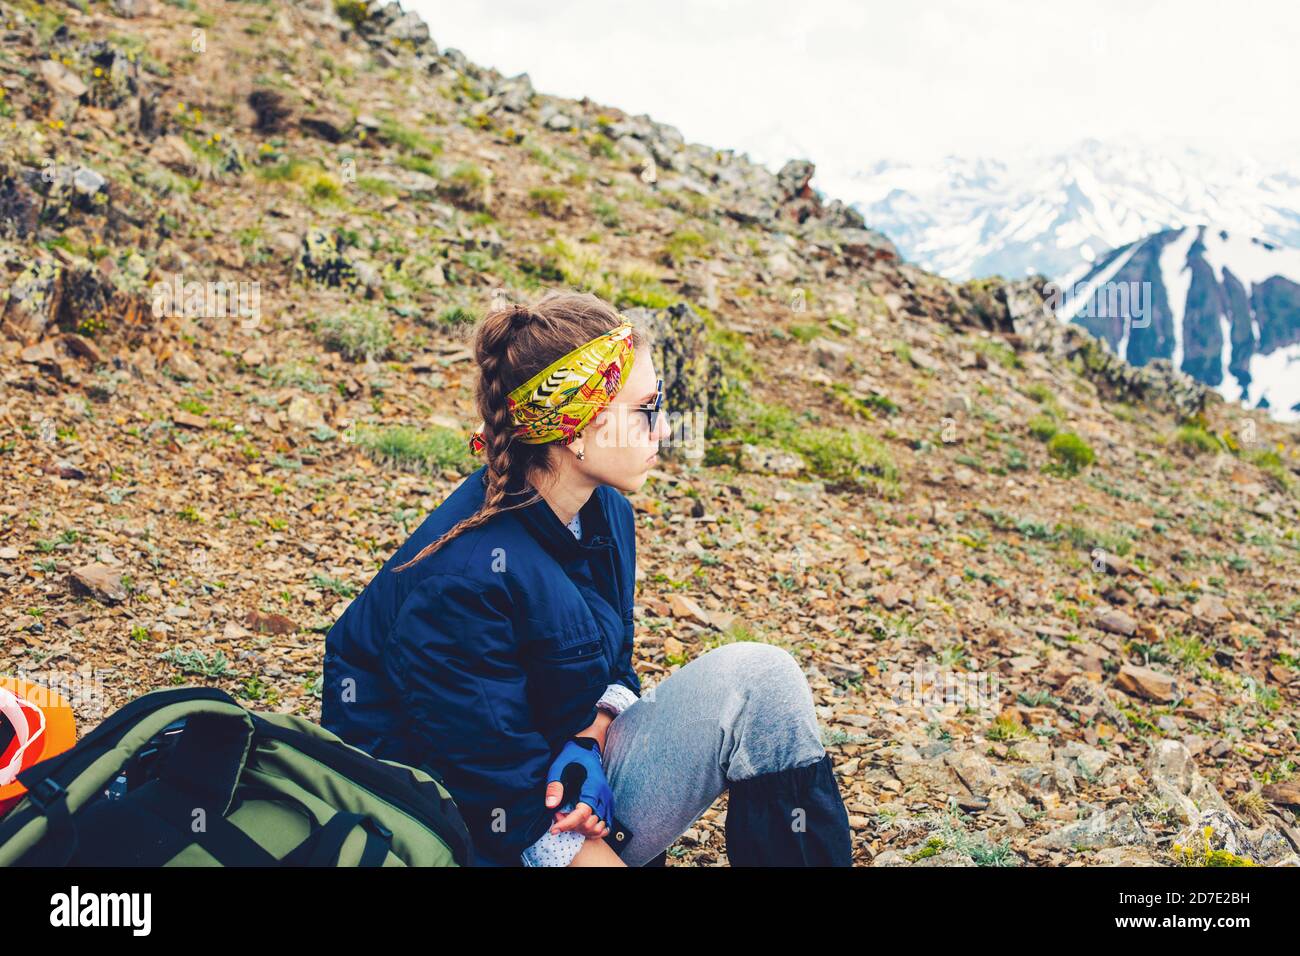 Femme voyageur randonnée dans les montagnes assis camping avec sac à dos Voyage Style de vie aventure concept actif vacances d'été en plein air alpinisme Banque D'Images